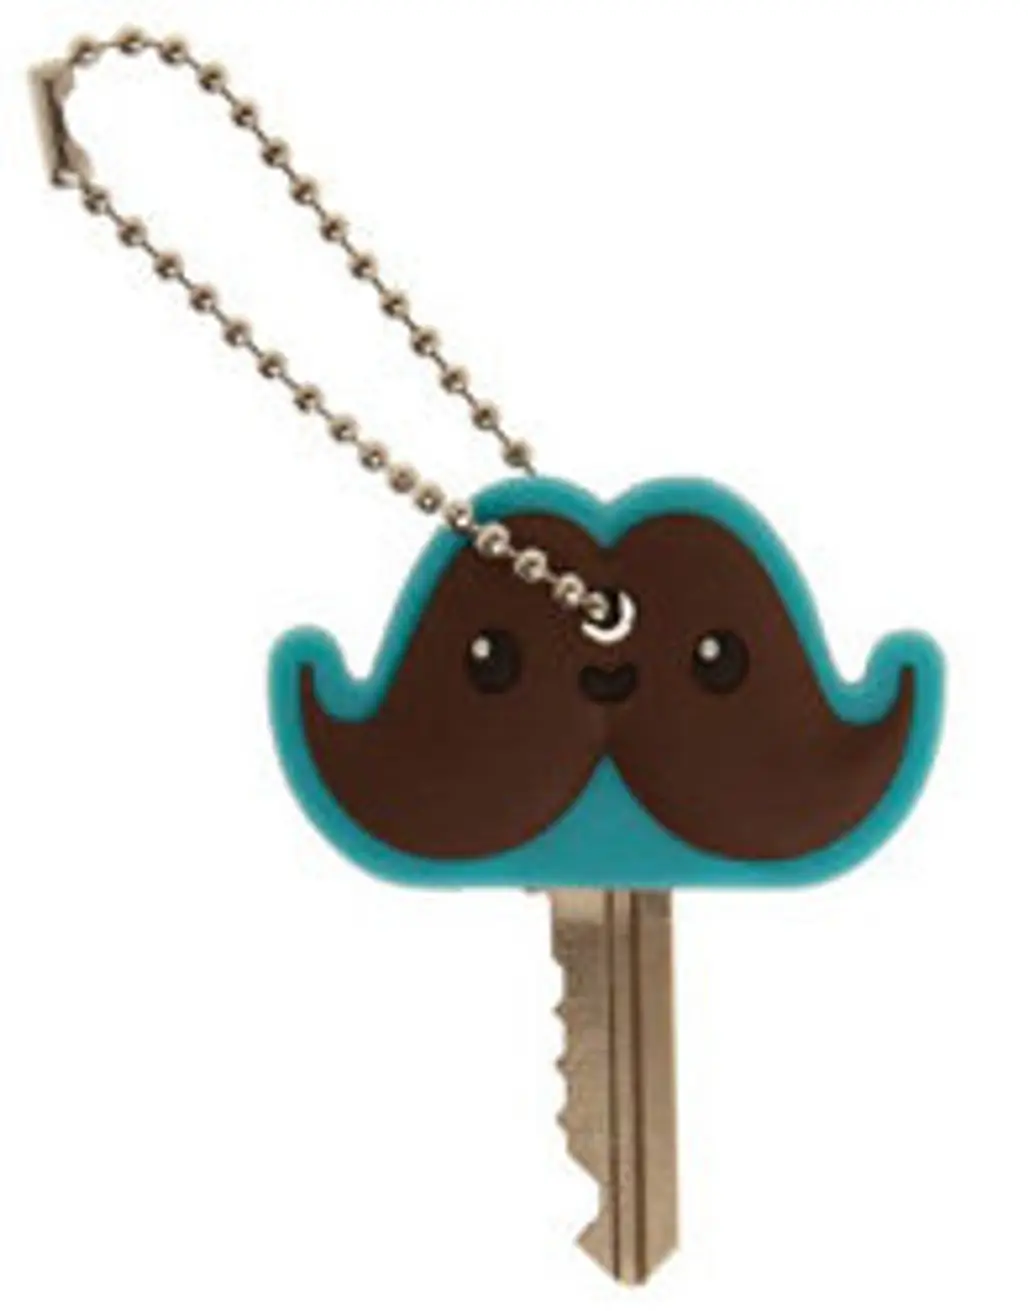 Mr. Mustachio Key Cap